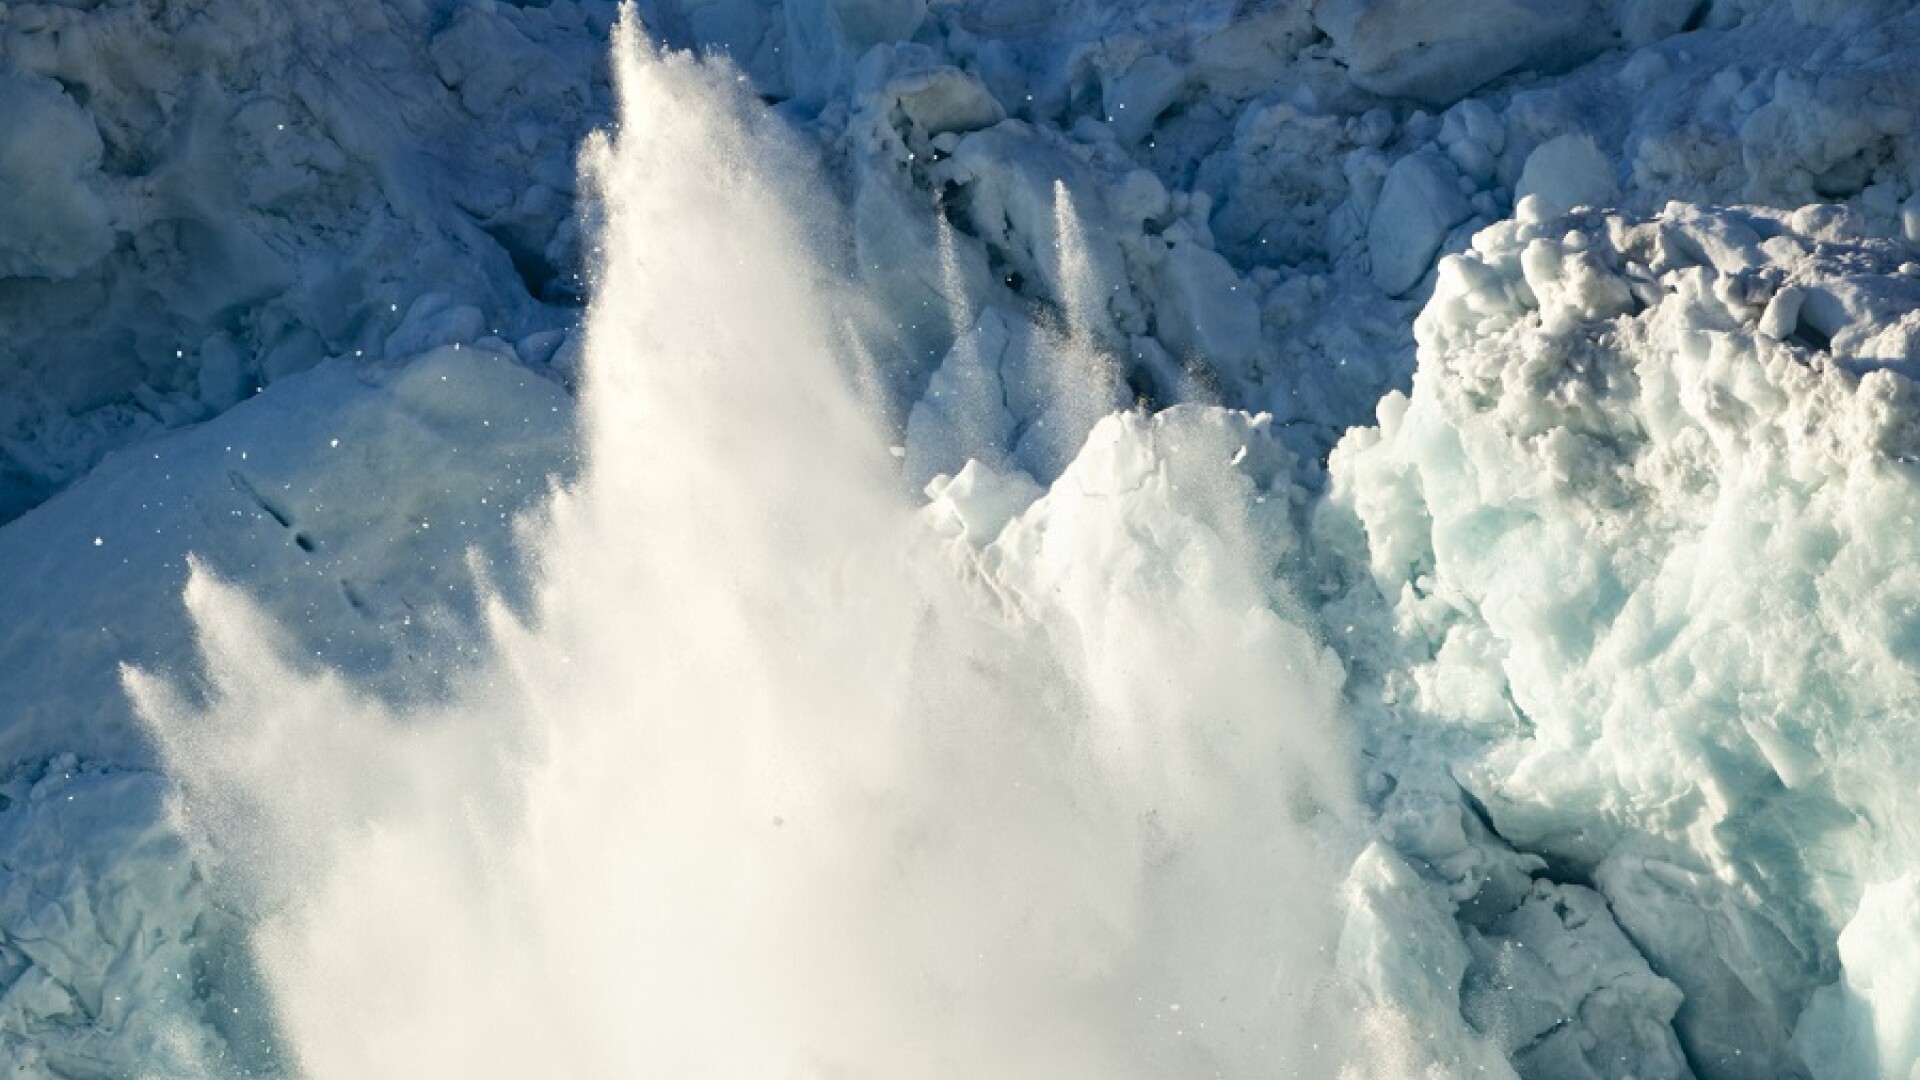 Trei persoane au murit într-o avalanșă care a avut loc în Austria